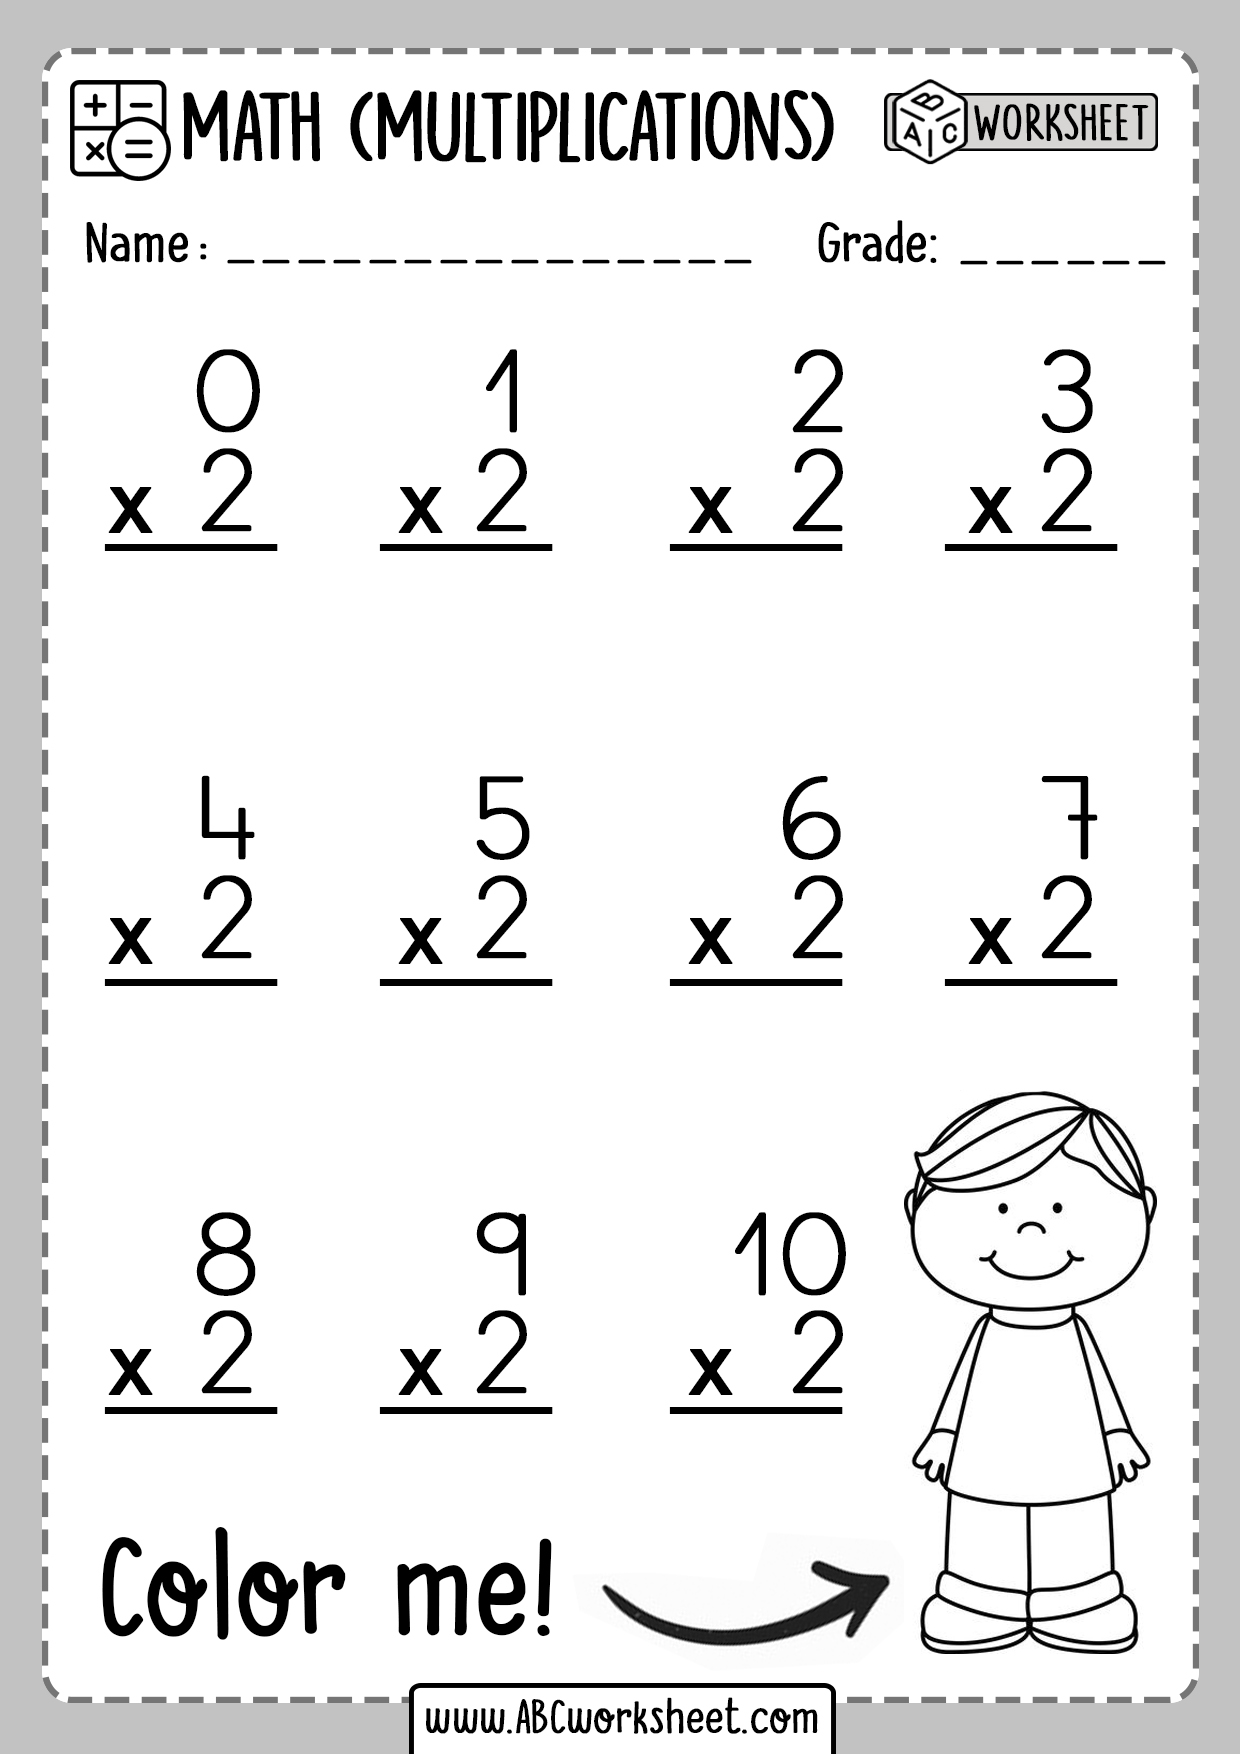 multiplication-table-worksheet-printable